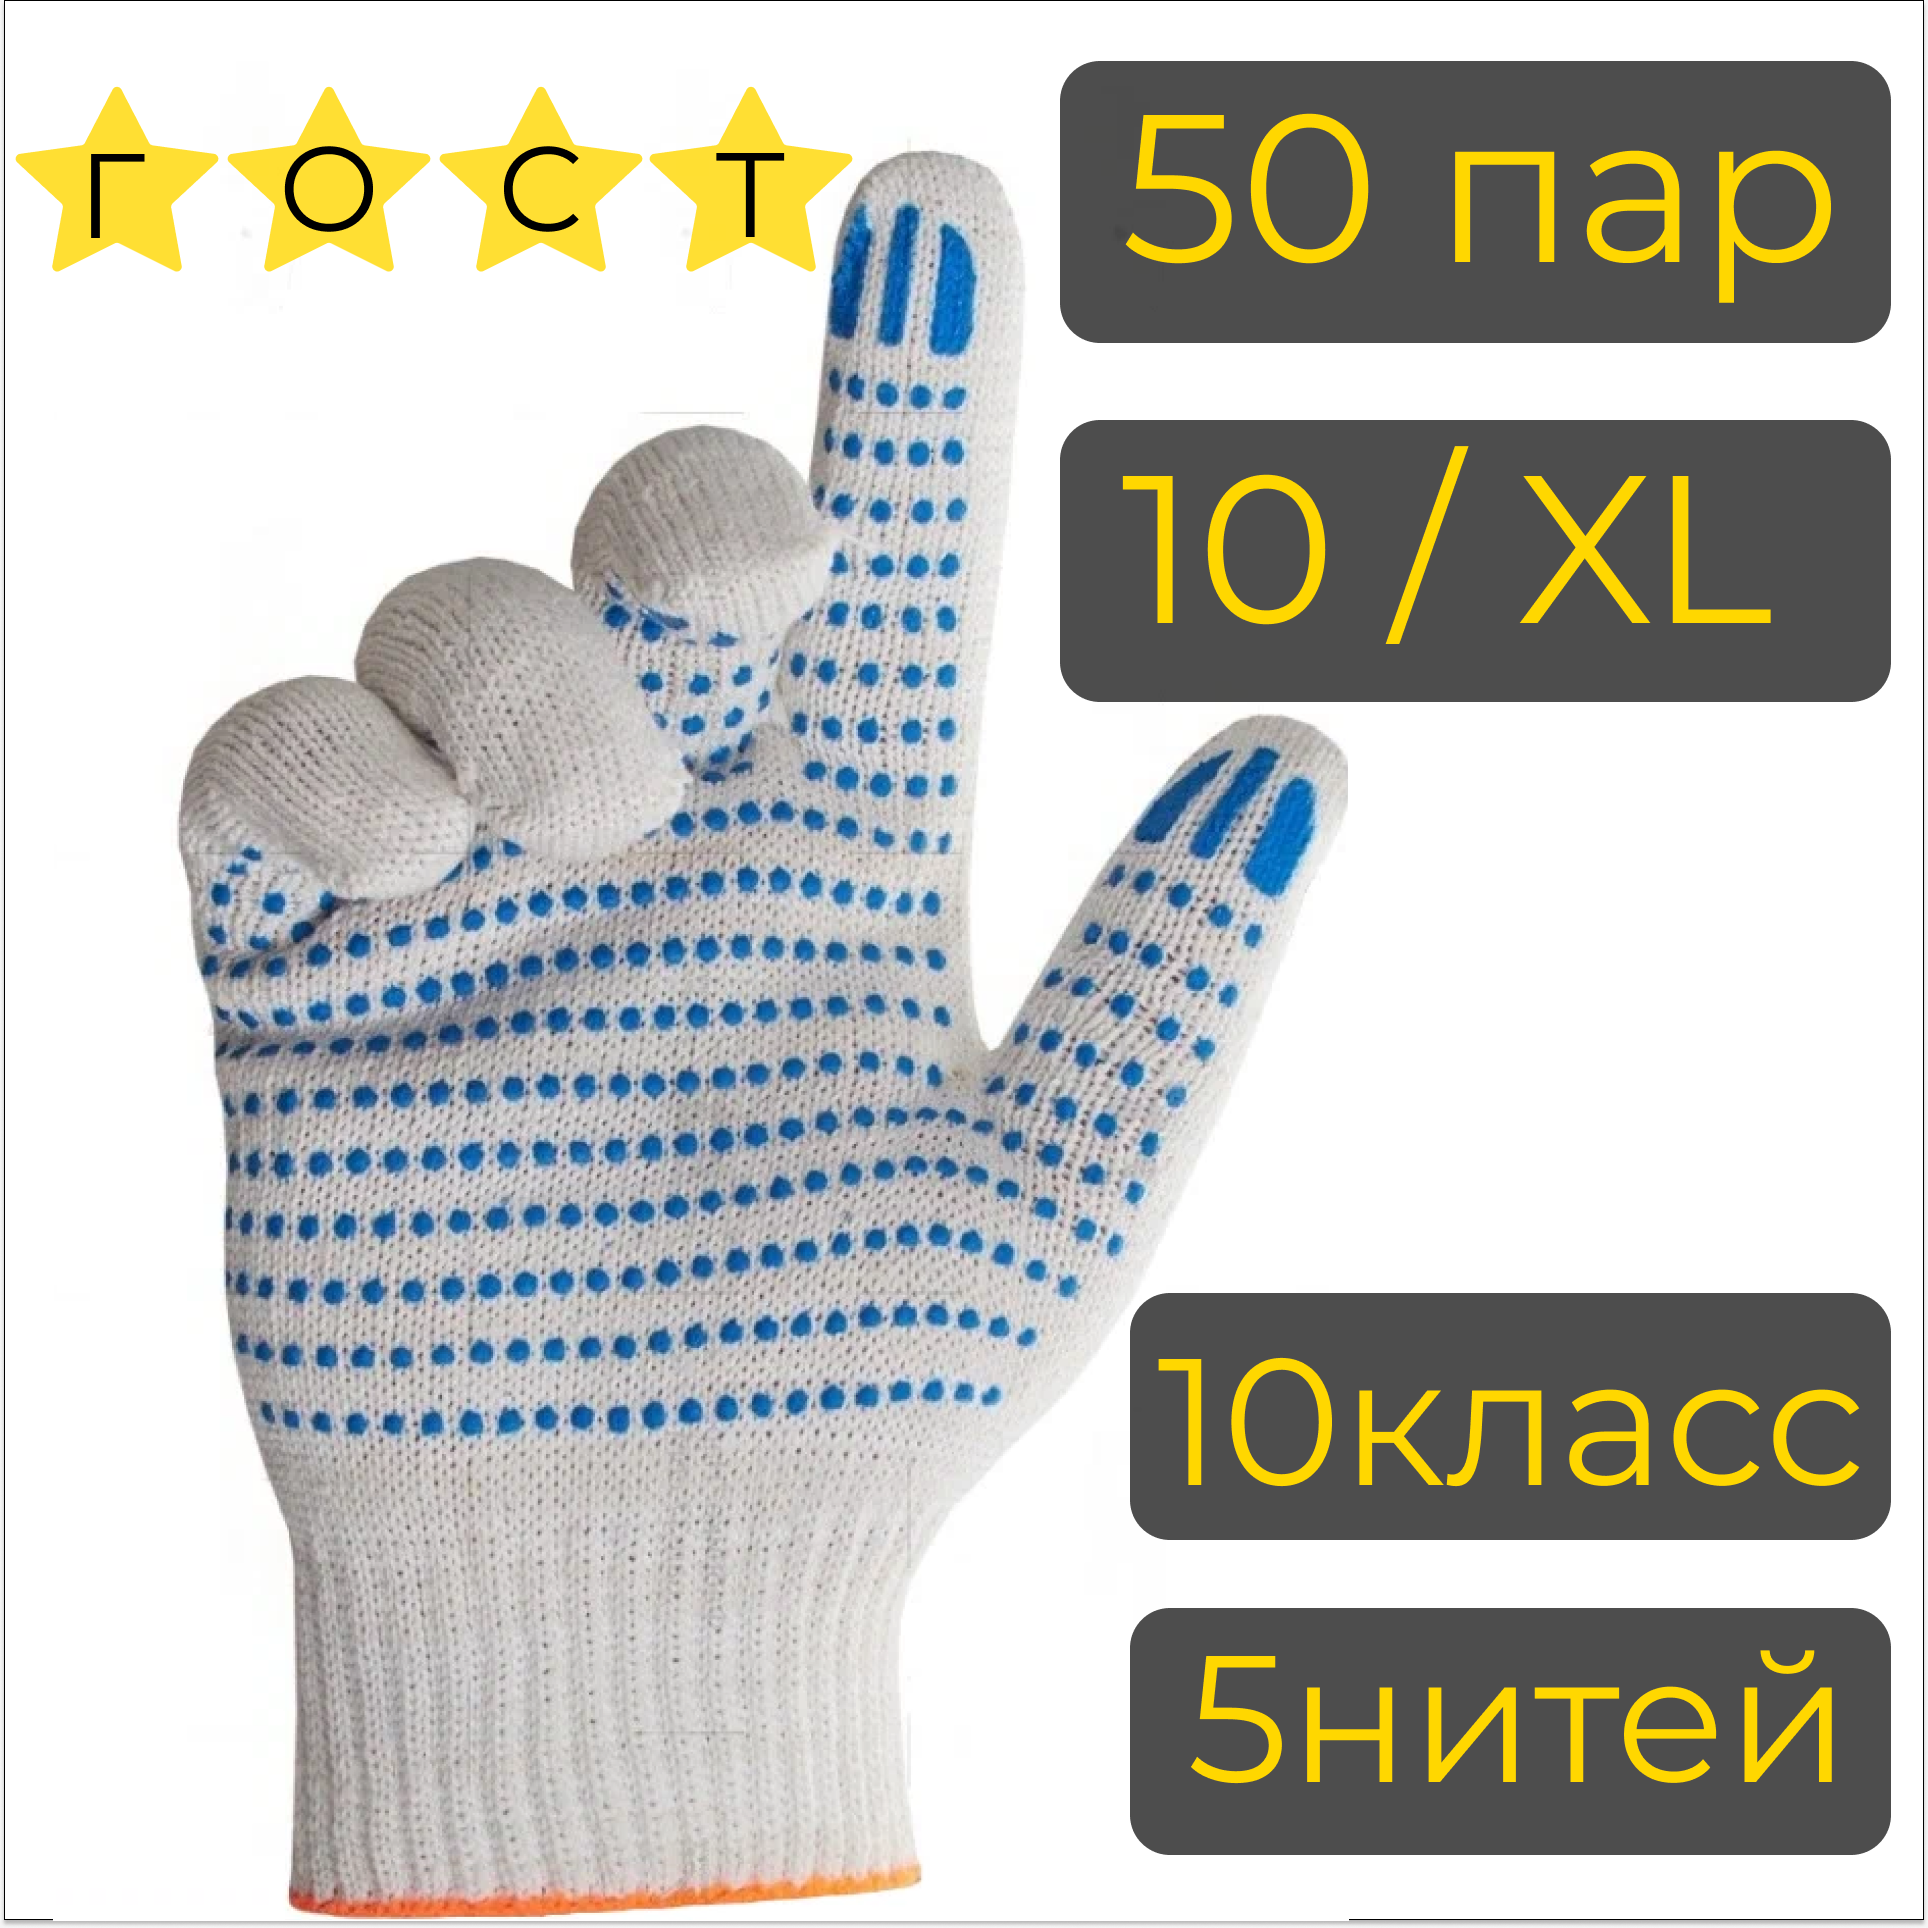 Рабочие перчатки ХБ с ПВХ, 50пар, 5 нитей, 10 класс, 10/XL, ГОСТ, строительные, белые